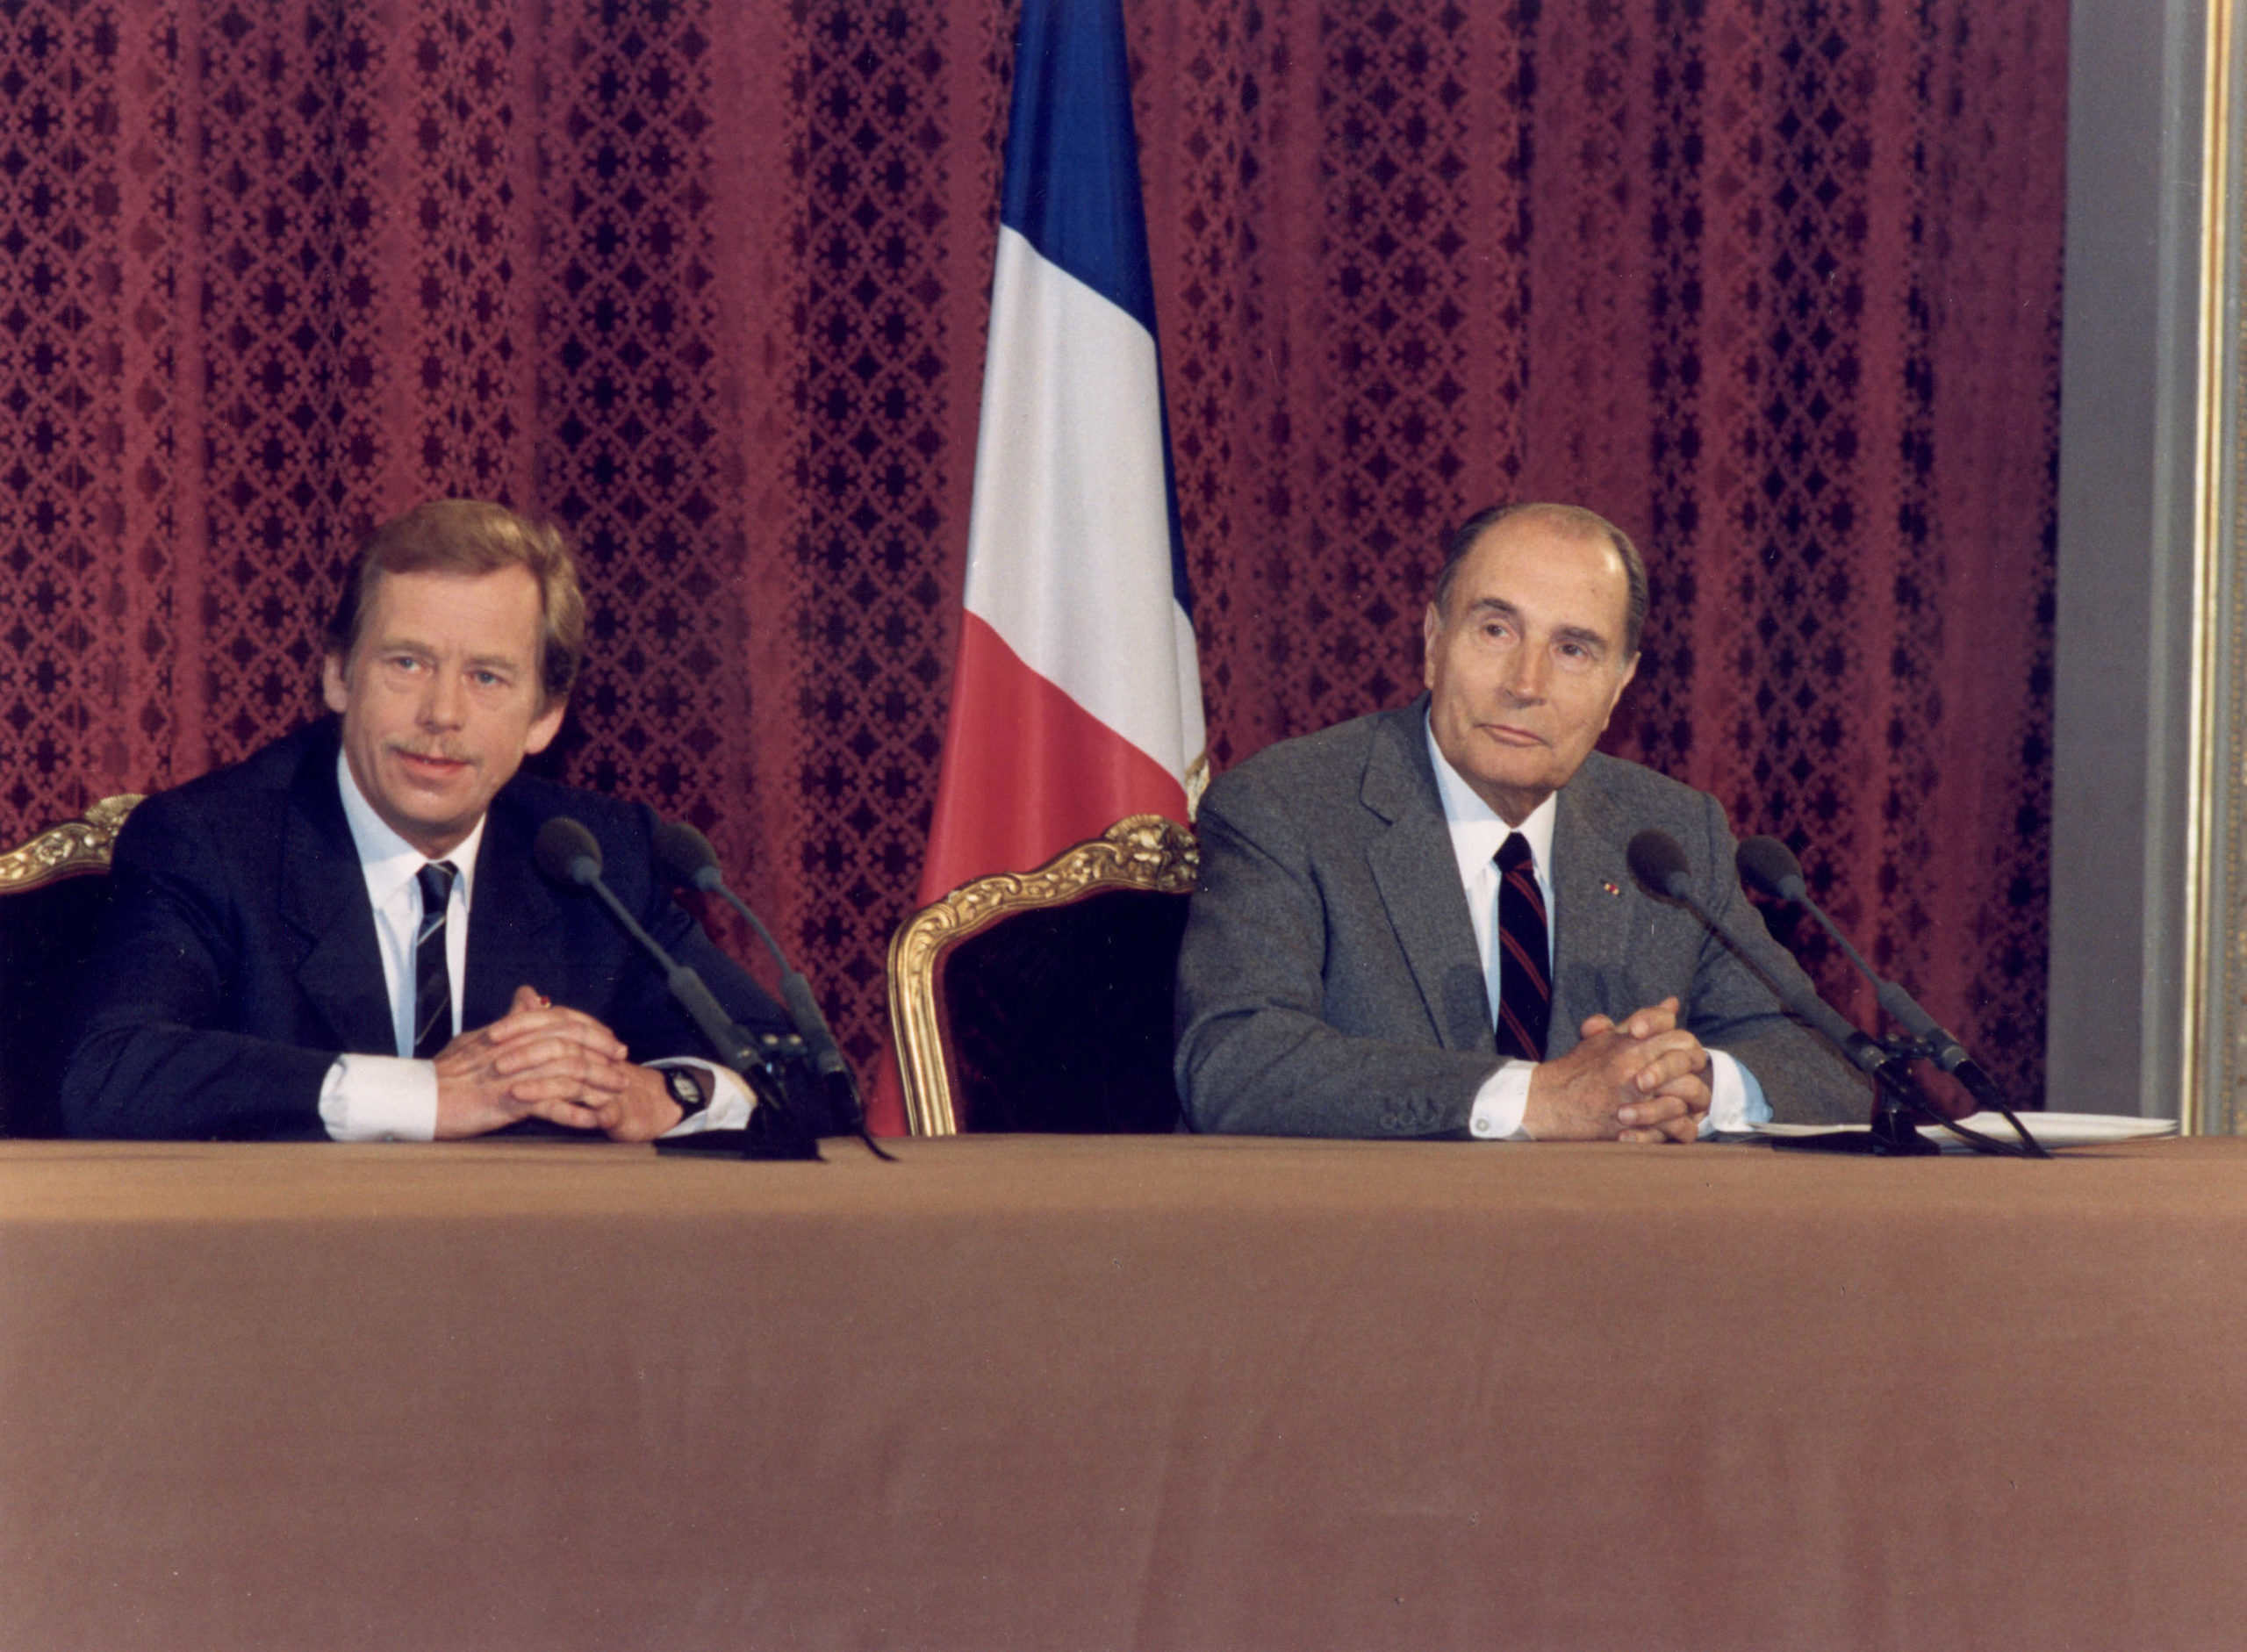 Conférence de presse conjointe de François Mitterrand et Vaclav Havel 